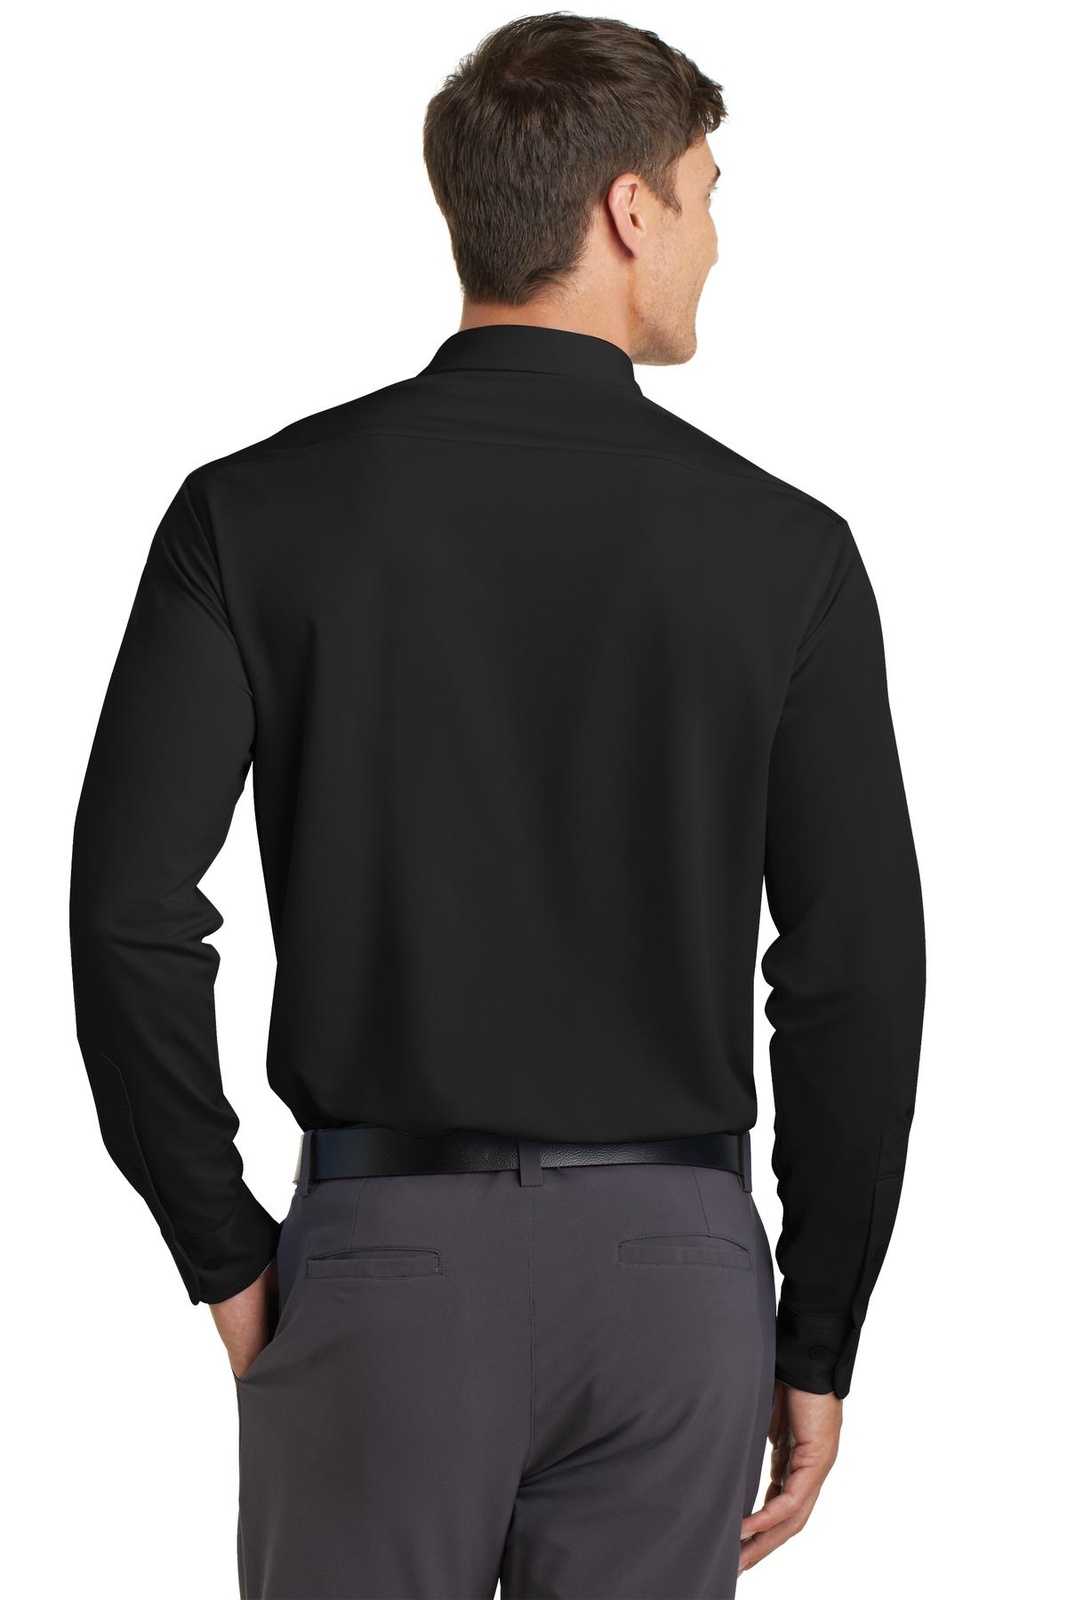 Port Authority K570 Dimension Knit Dress Shirt - Black - HIT a Double - 2